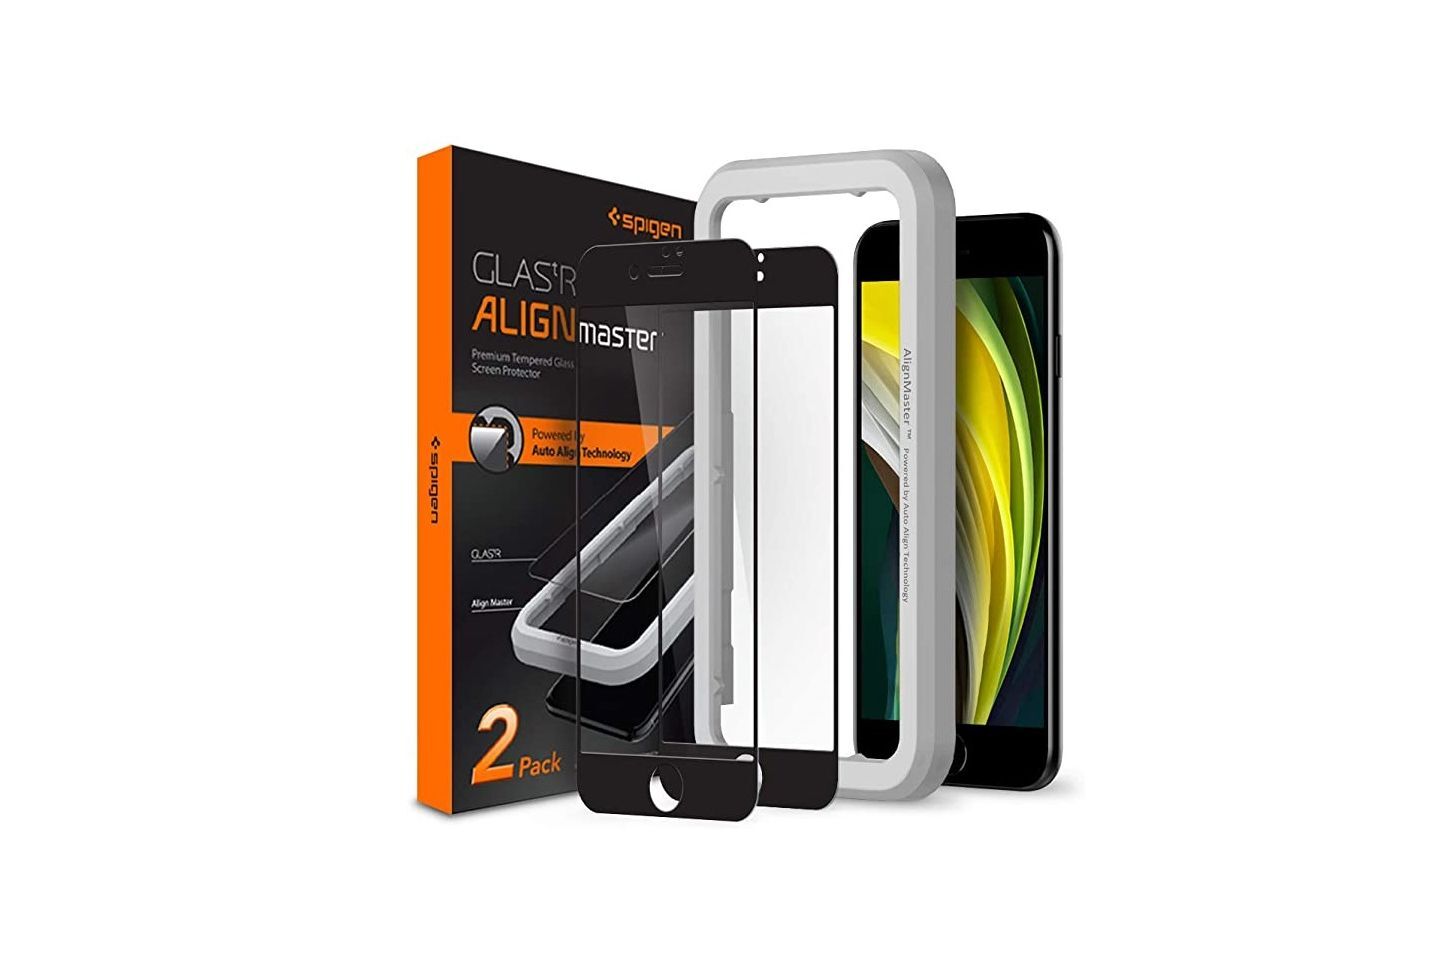 Spigen Tempered Glass iPhone SE (2022) Screen Protector - The best iPhone SE (2022) screen protectors - our comprehensive list